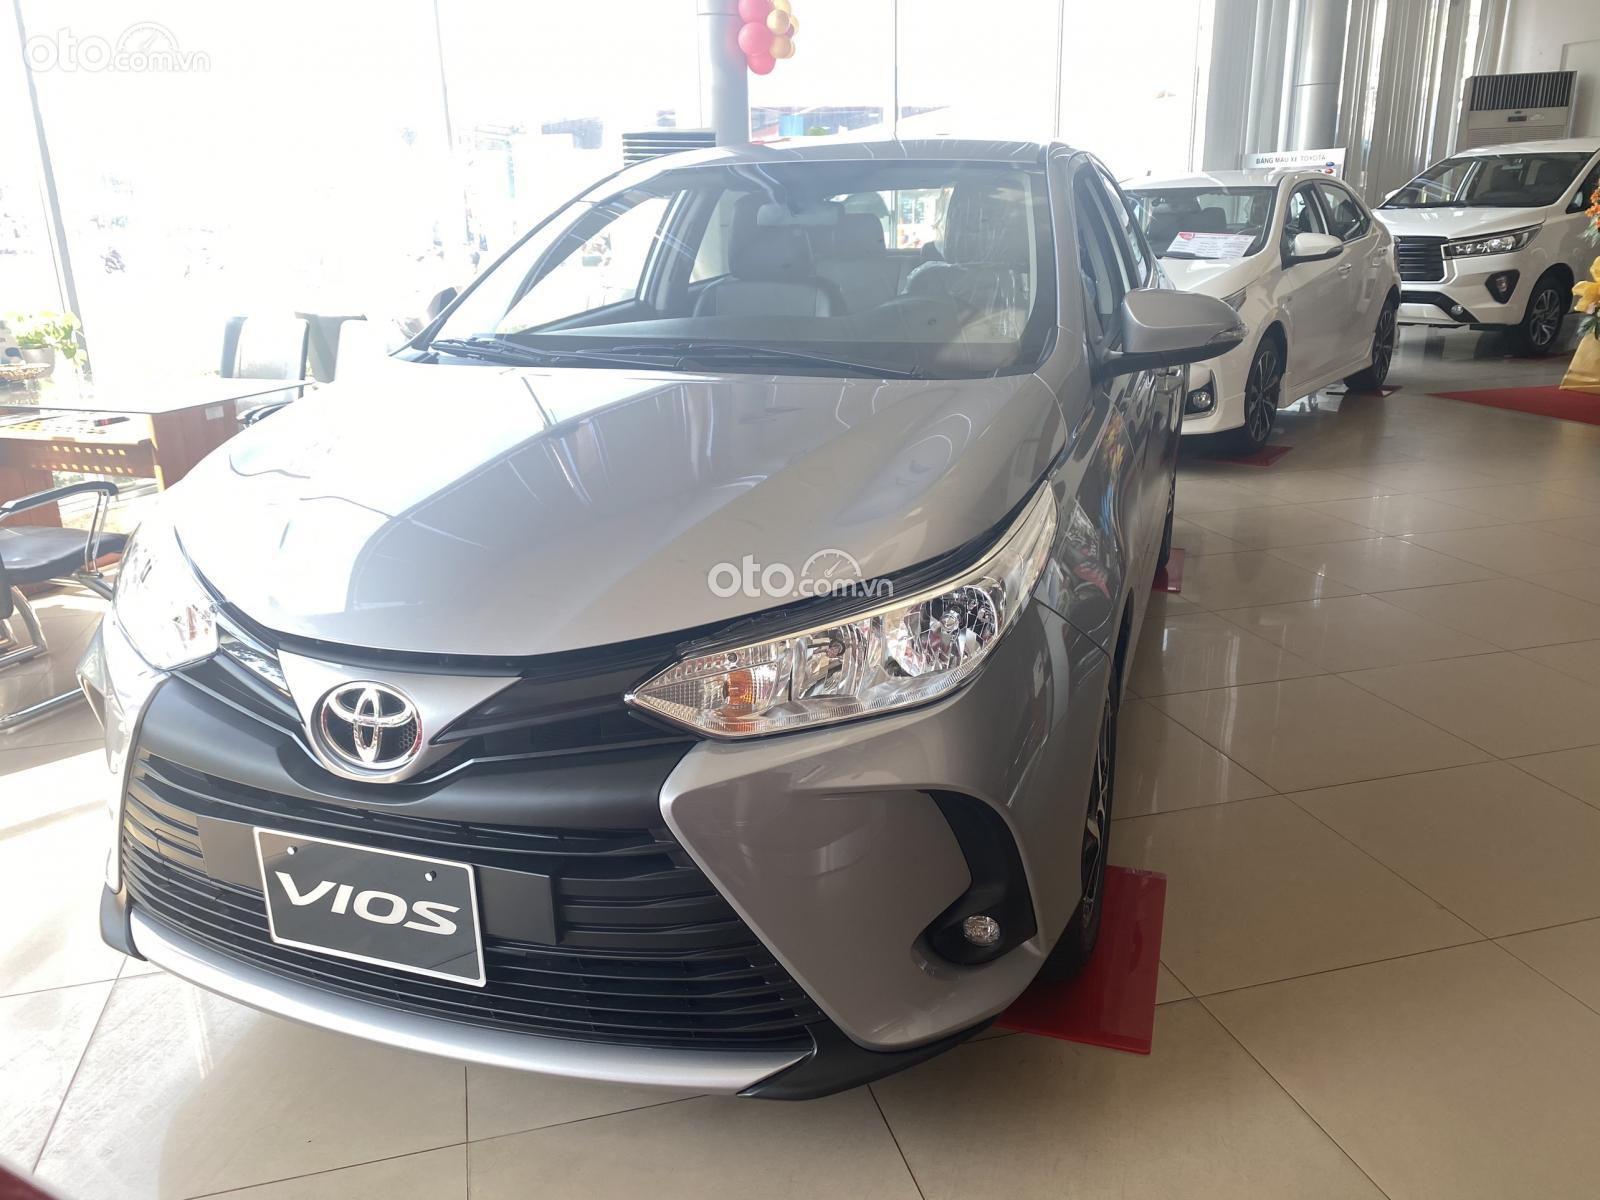 Toyota Vios trả góp chỉ 120 triệu - khuyến mãi khủng